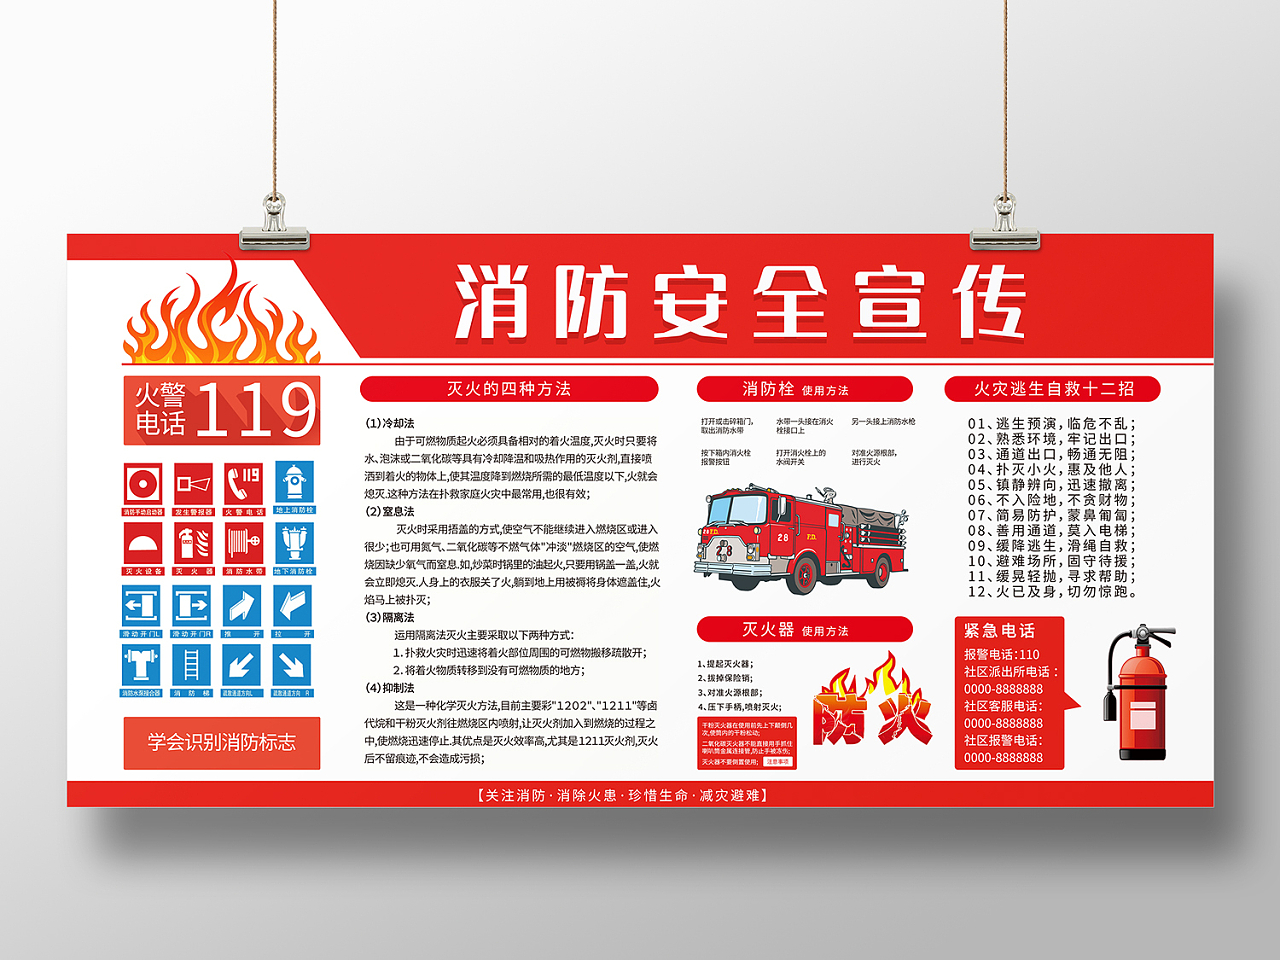 红色简约风消防知识增强消防安全意识提高火灾逃生展板消防安全宣传展板